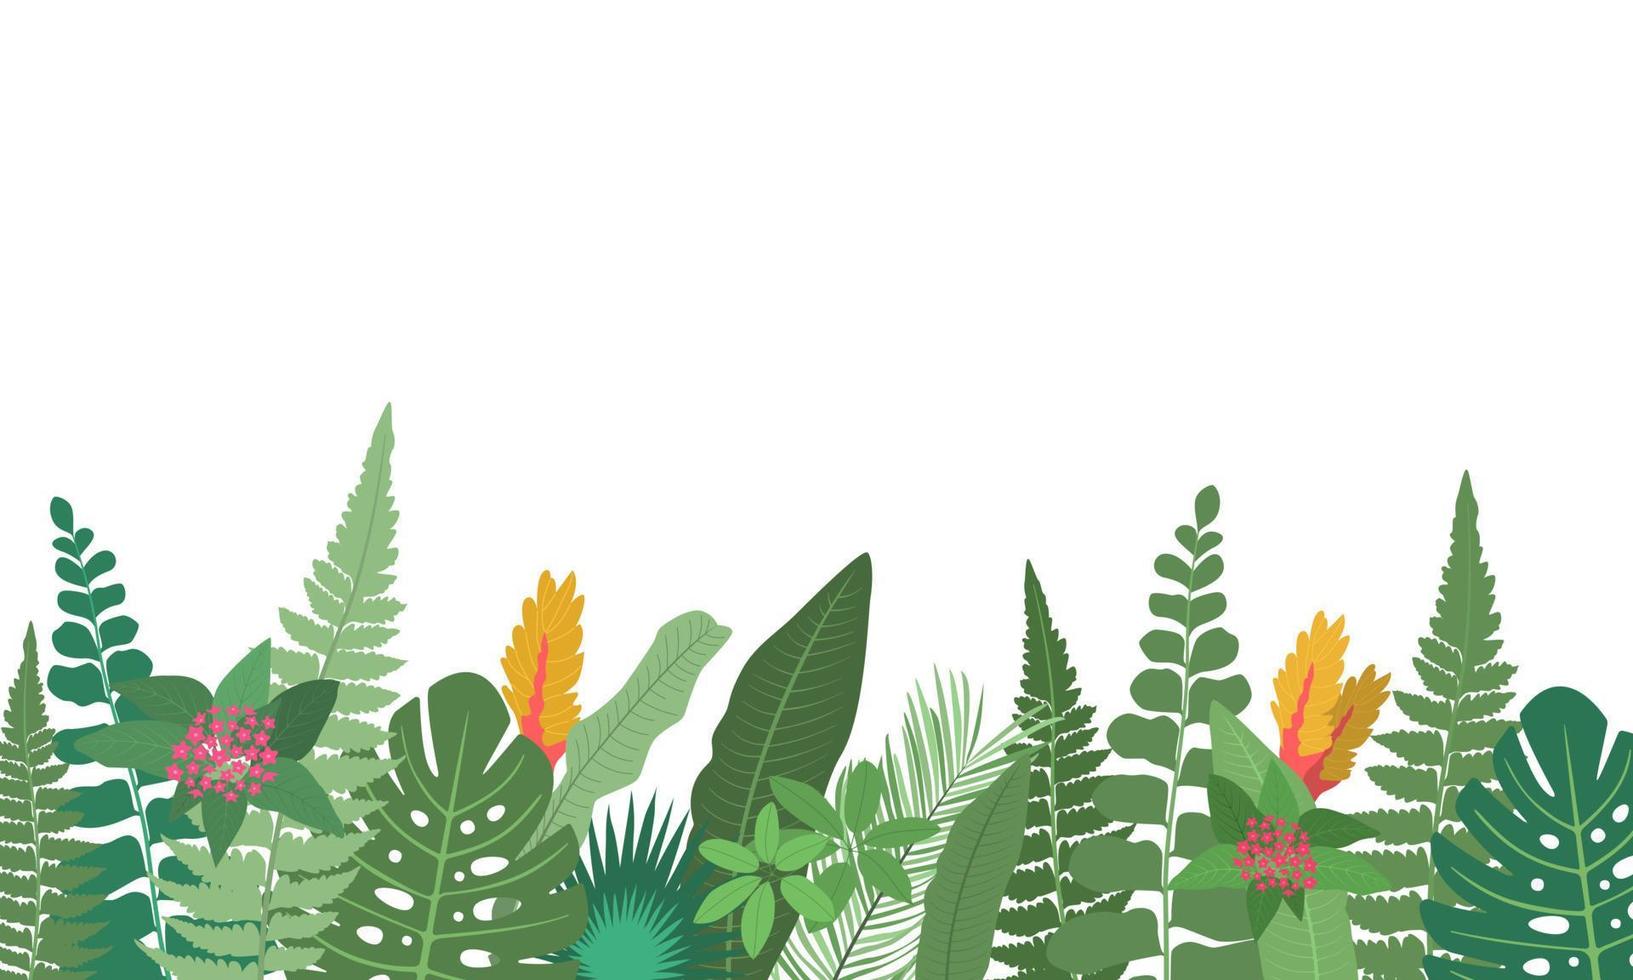 marco de borde floral horizontal con hojas tropicales verdes y flores de plantas tropicales sobre fondo blanco. bordes de follaje tropical. ilustración plana vectorial. vector